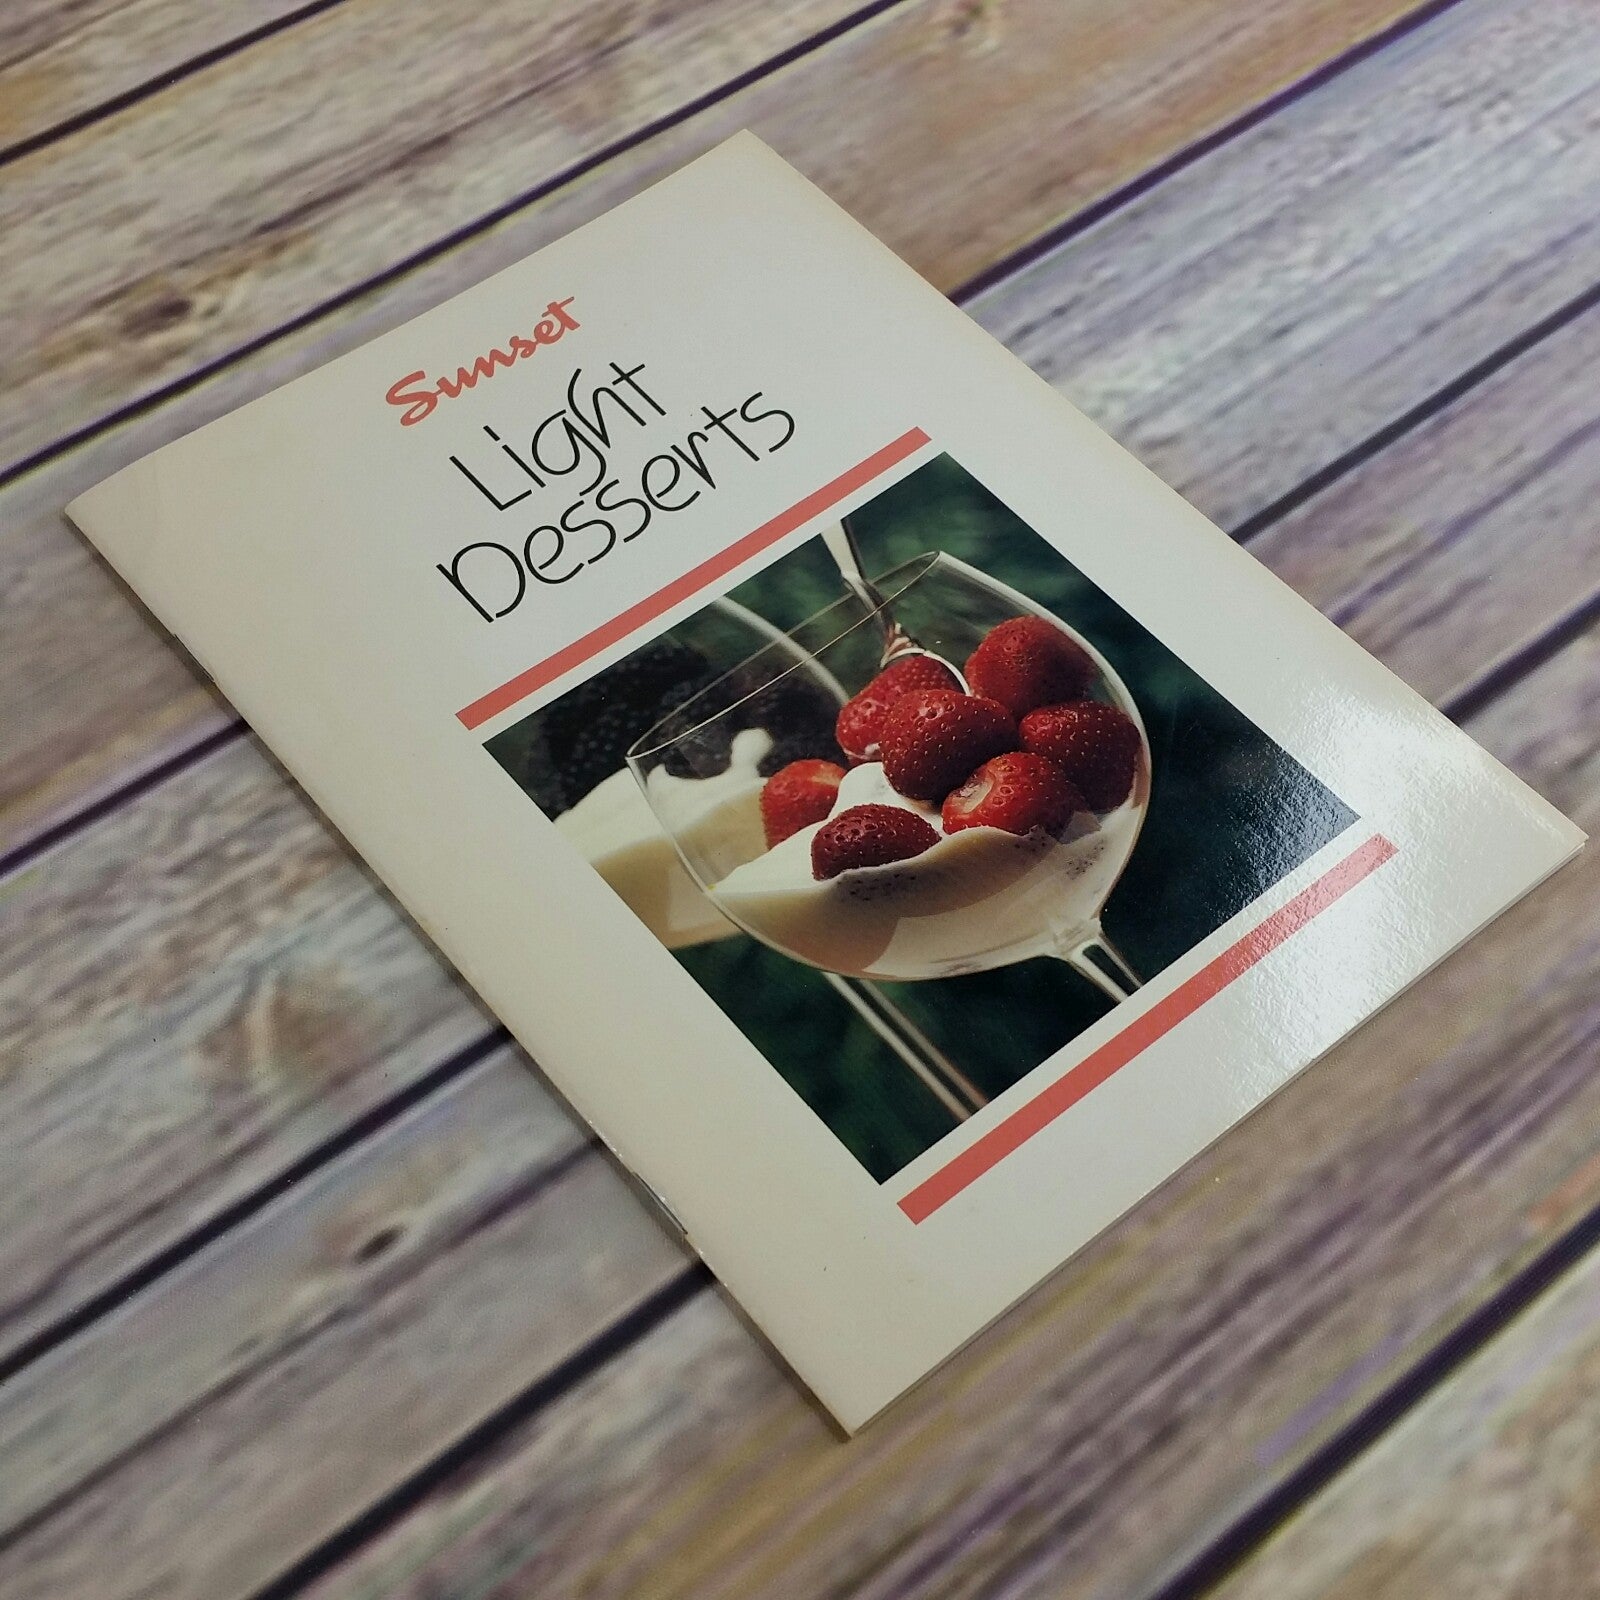 Vintage Cookbook Sunset Light Desserts Cook Book Recipes 1987 Paperback Booklet - At Grandma's Table